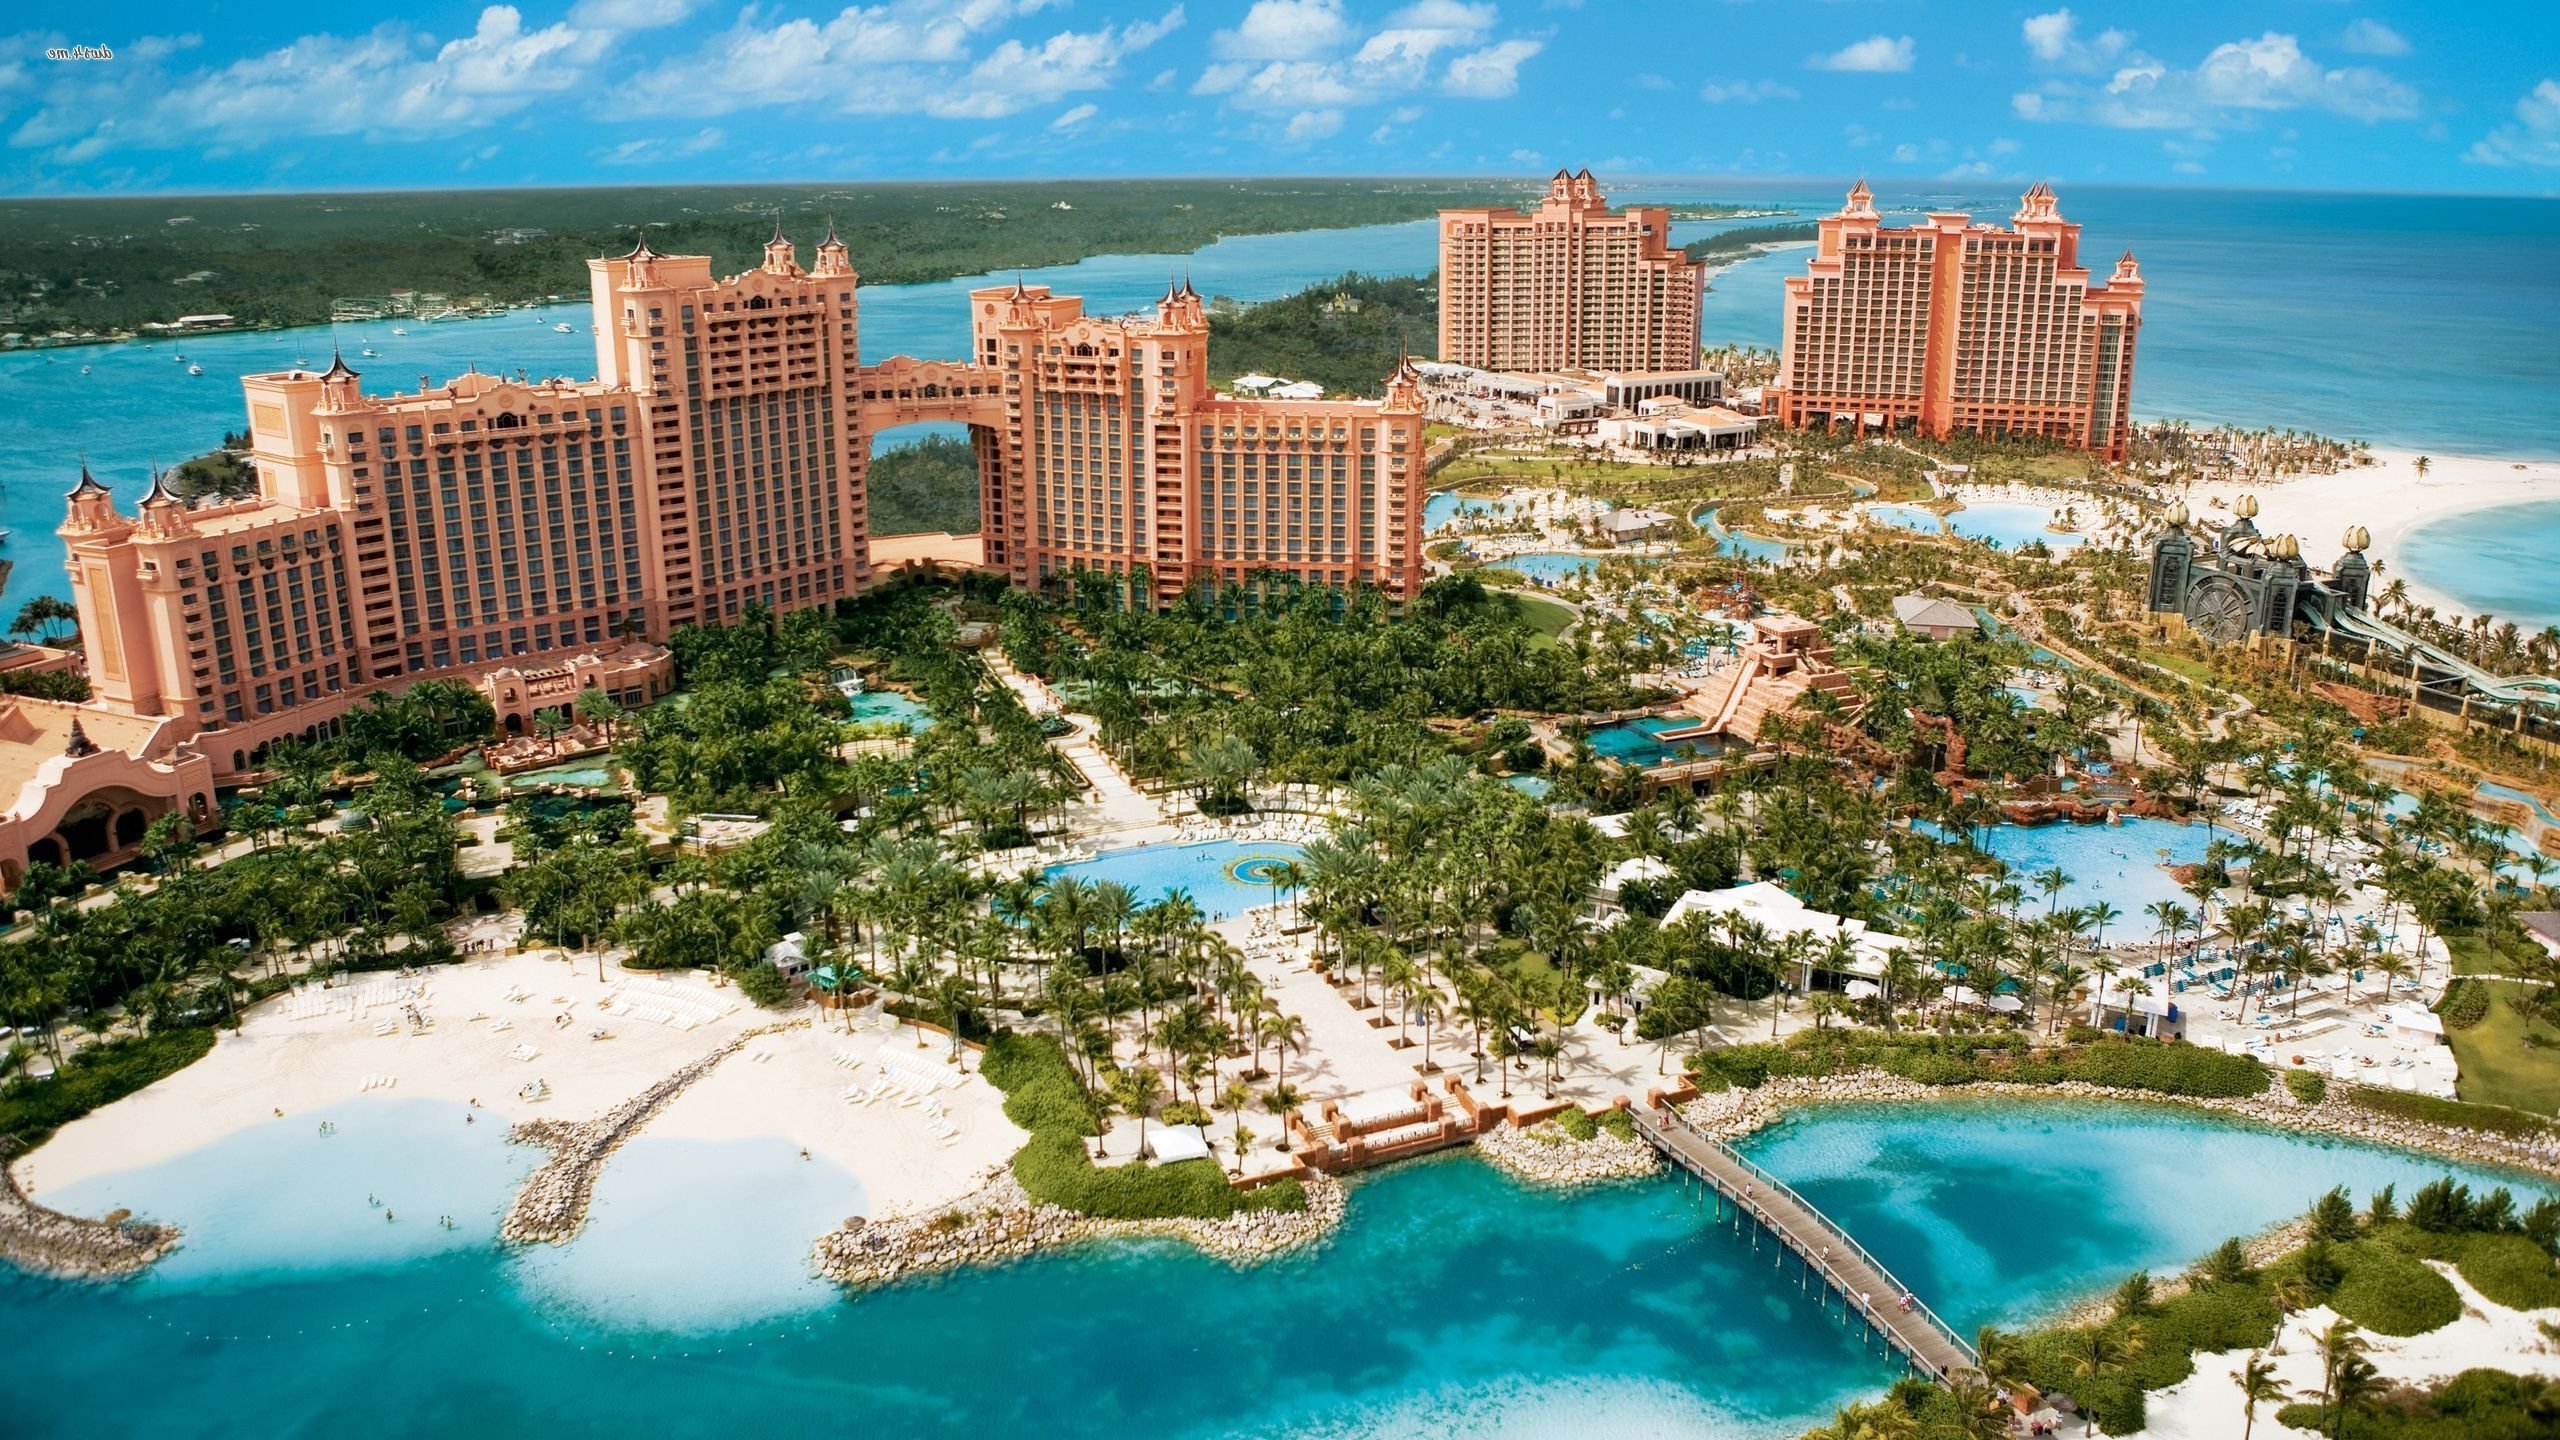 Et si vous alliez vivre gratuitement aux Bahamas pendant deux mois ?